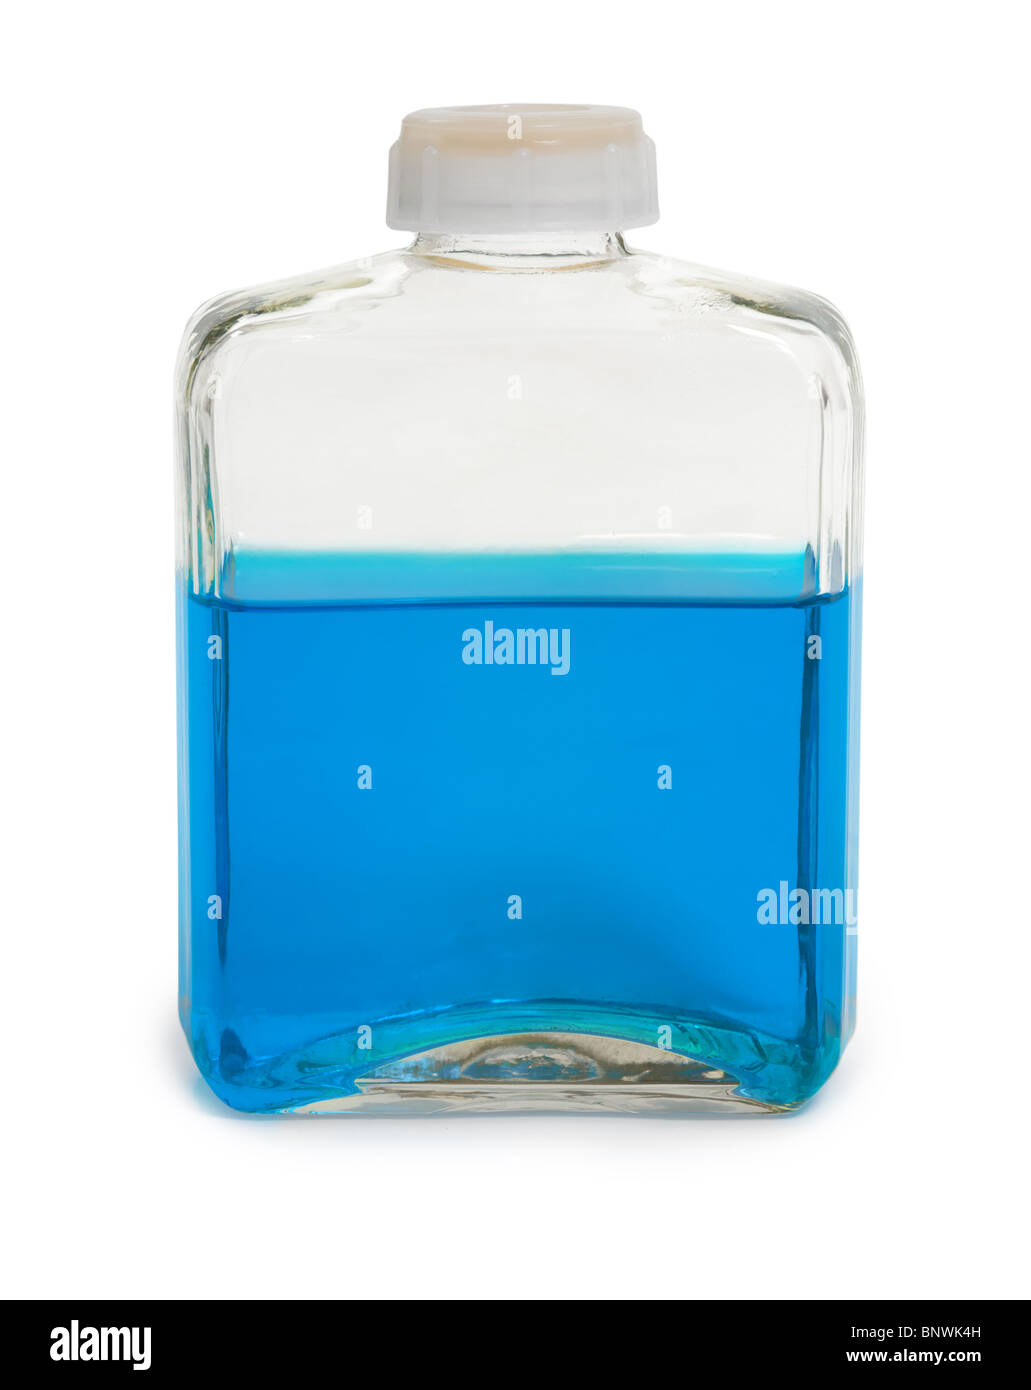 Le flacon en verre rempli d'une solution chimique bleu foncé Banque D'Images